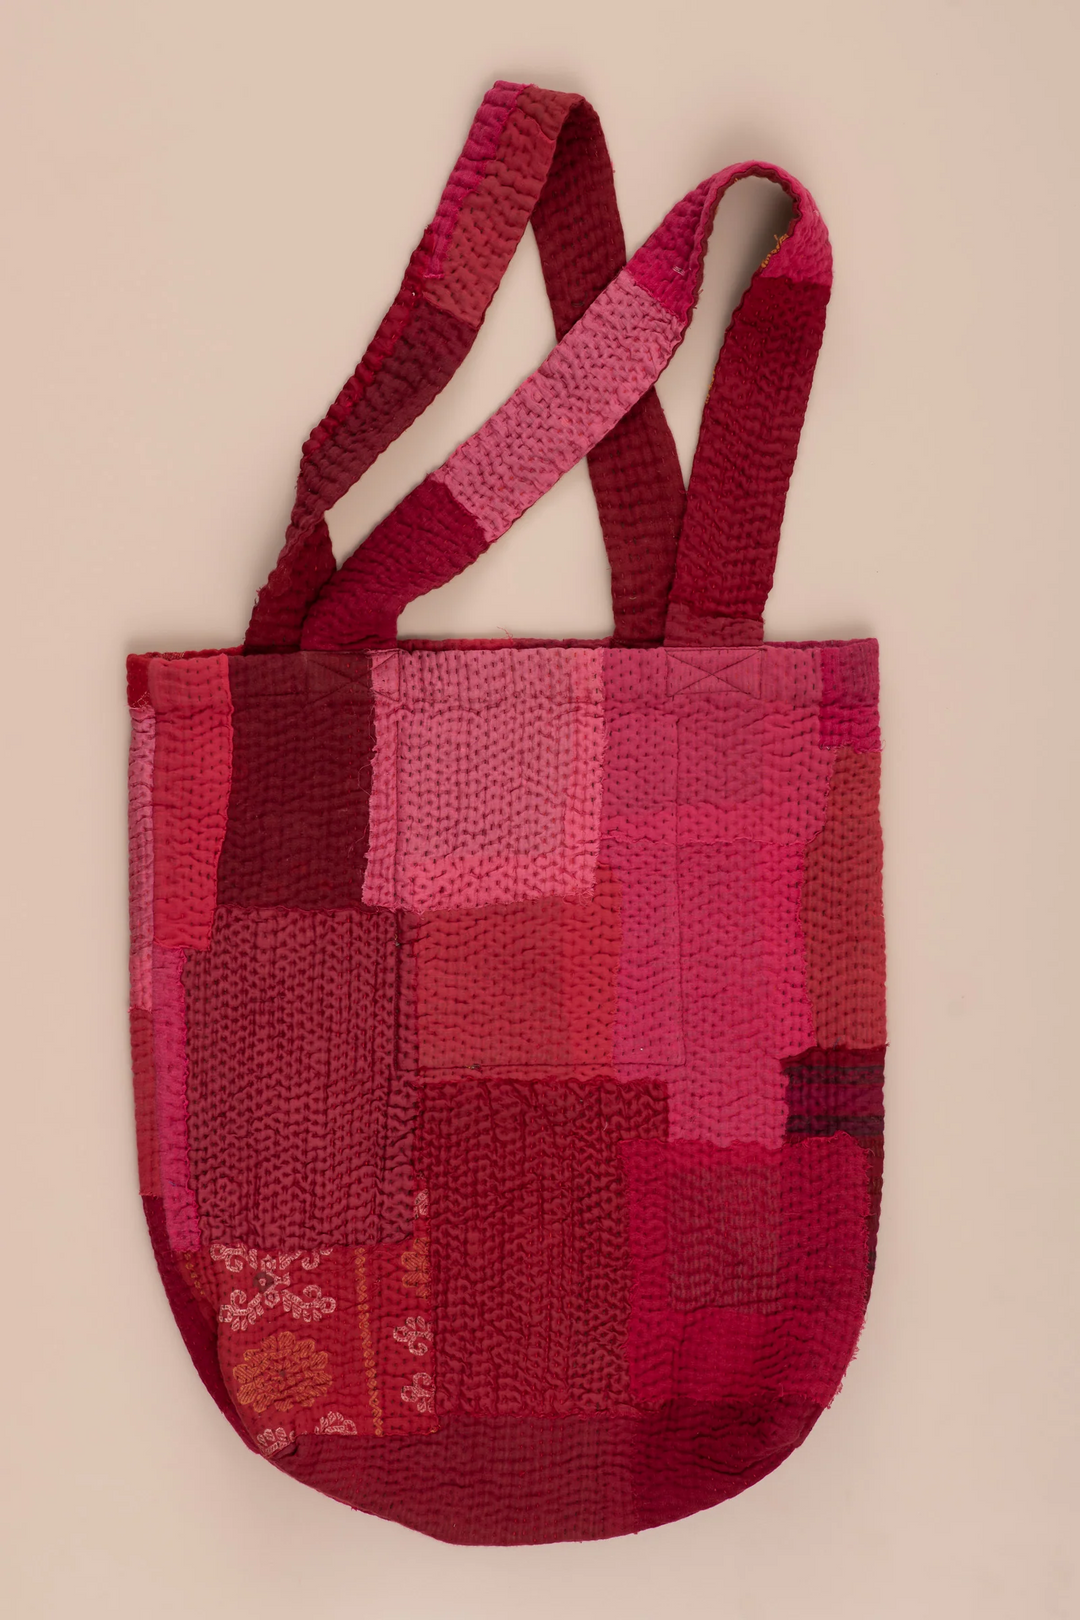 Landscape Handmade Vintage Kantha Tote Bag -Red -